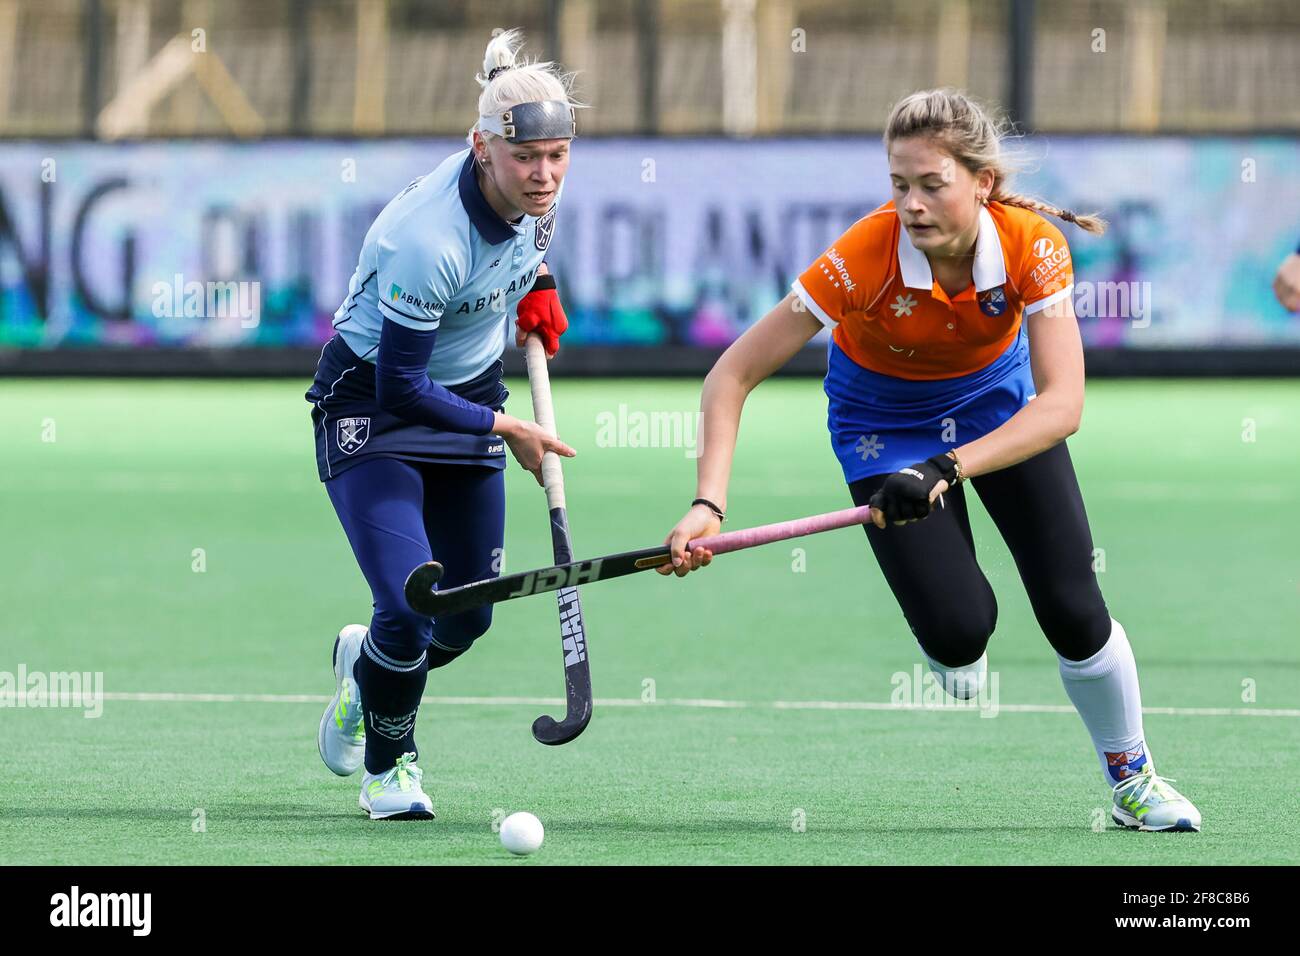 BLOEMENDAAL, NETHERLANDS - APRIL 11: Katerina Lacina of Laren, Cis van der  Salm of Bloemendaal during the Dutch Women Hockey Hoofdklasse match between  Stock Photo - Alamy